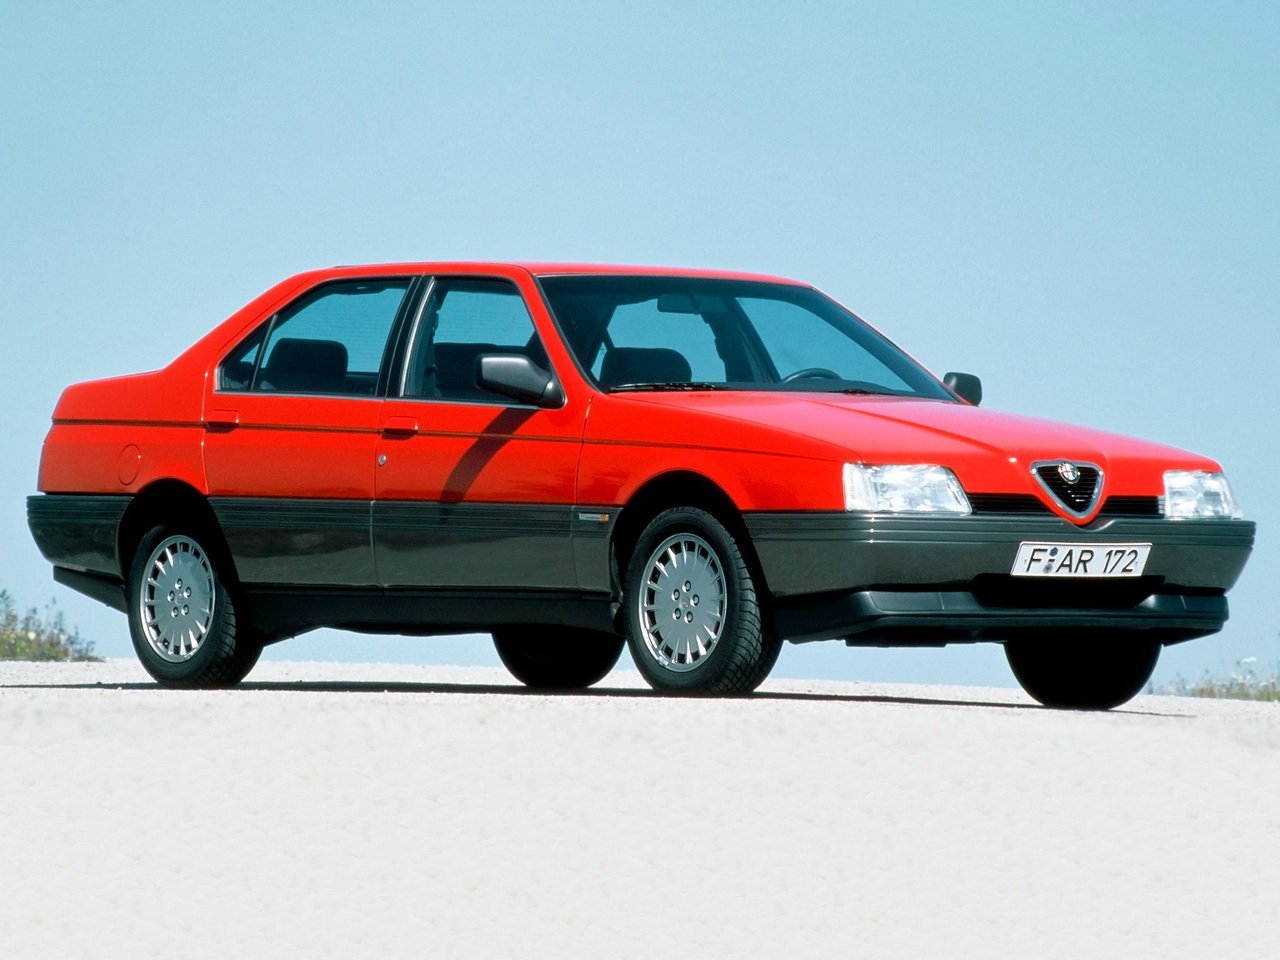 Снижаем расход Alfa Romeo 164 на топливо, устанавливаем ГБО